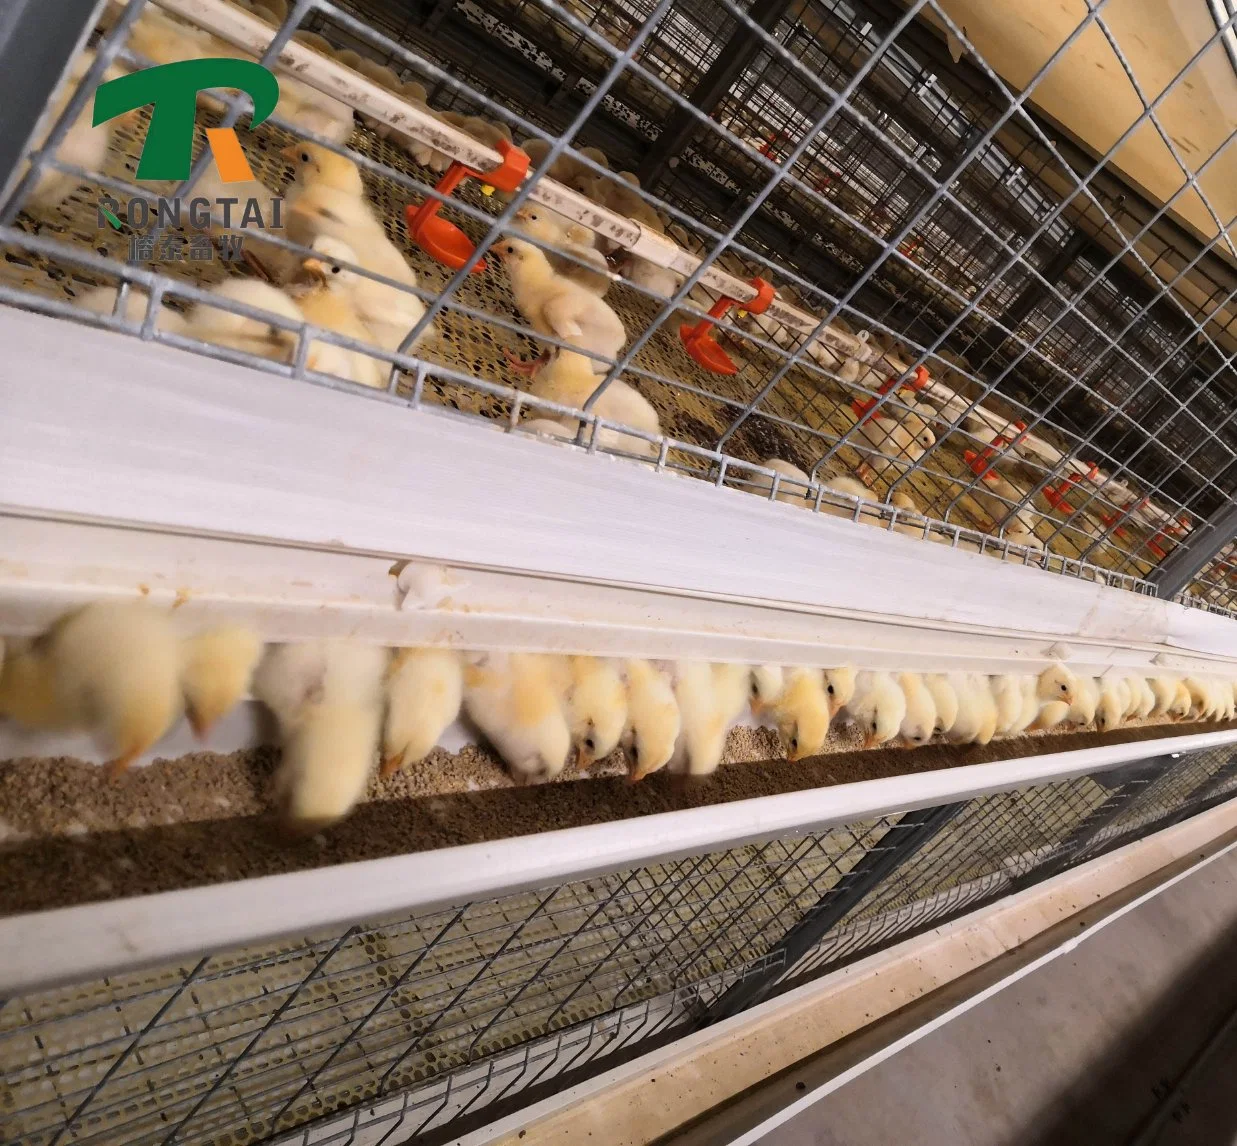 Galvanizado en caliente de la batería de aves de corral de la capa de huevo tipo escalera de la granja de pollos broiler automático de la capa y capa de la granja de huevos de aves de corral de la jaula de pollo